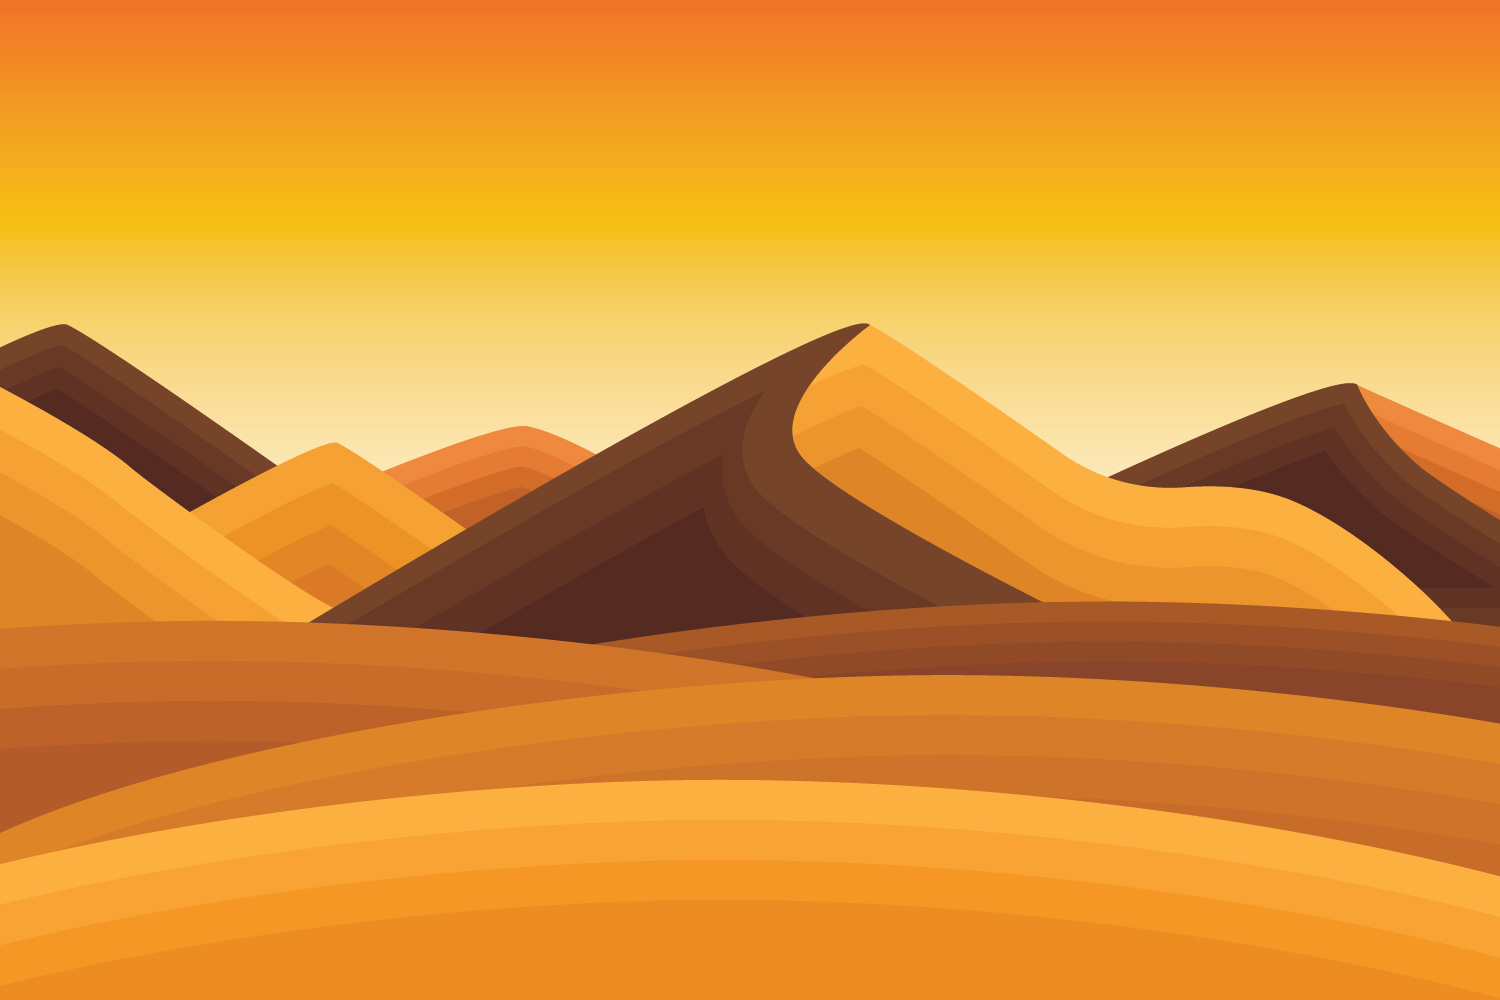  Desert Landscape Download Free Vectors Clipart Graphics 